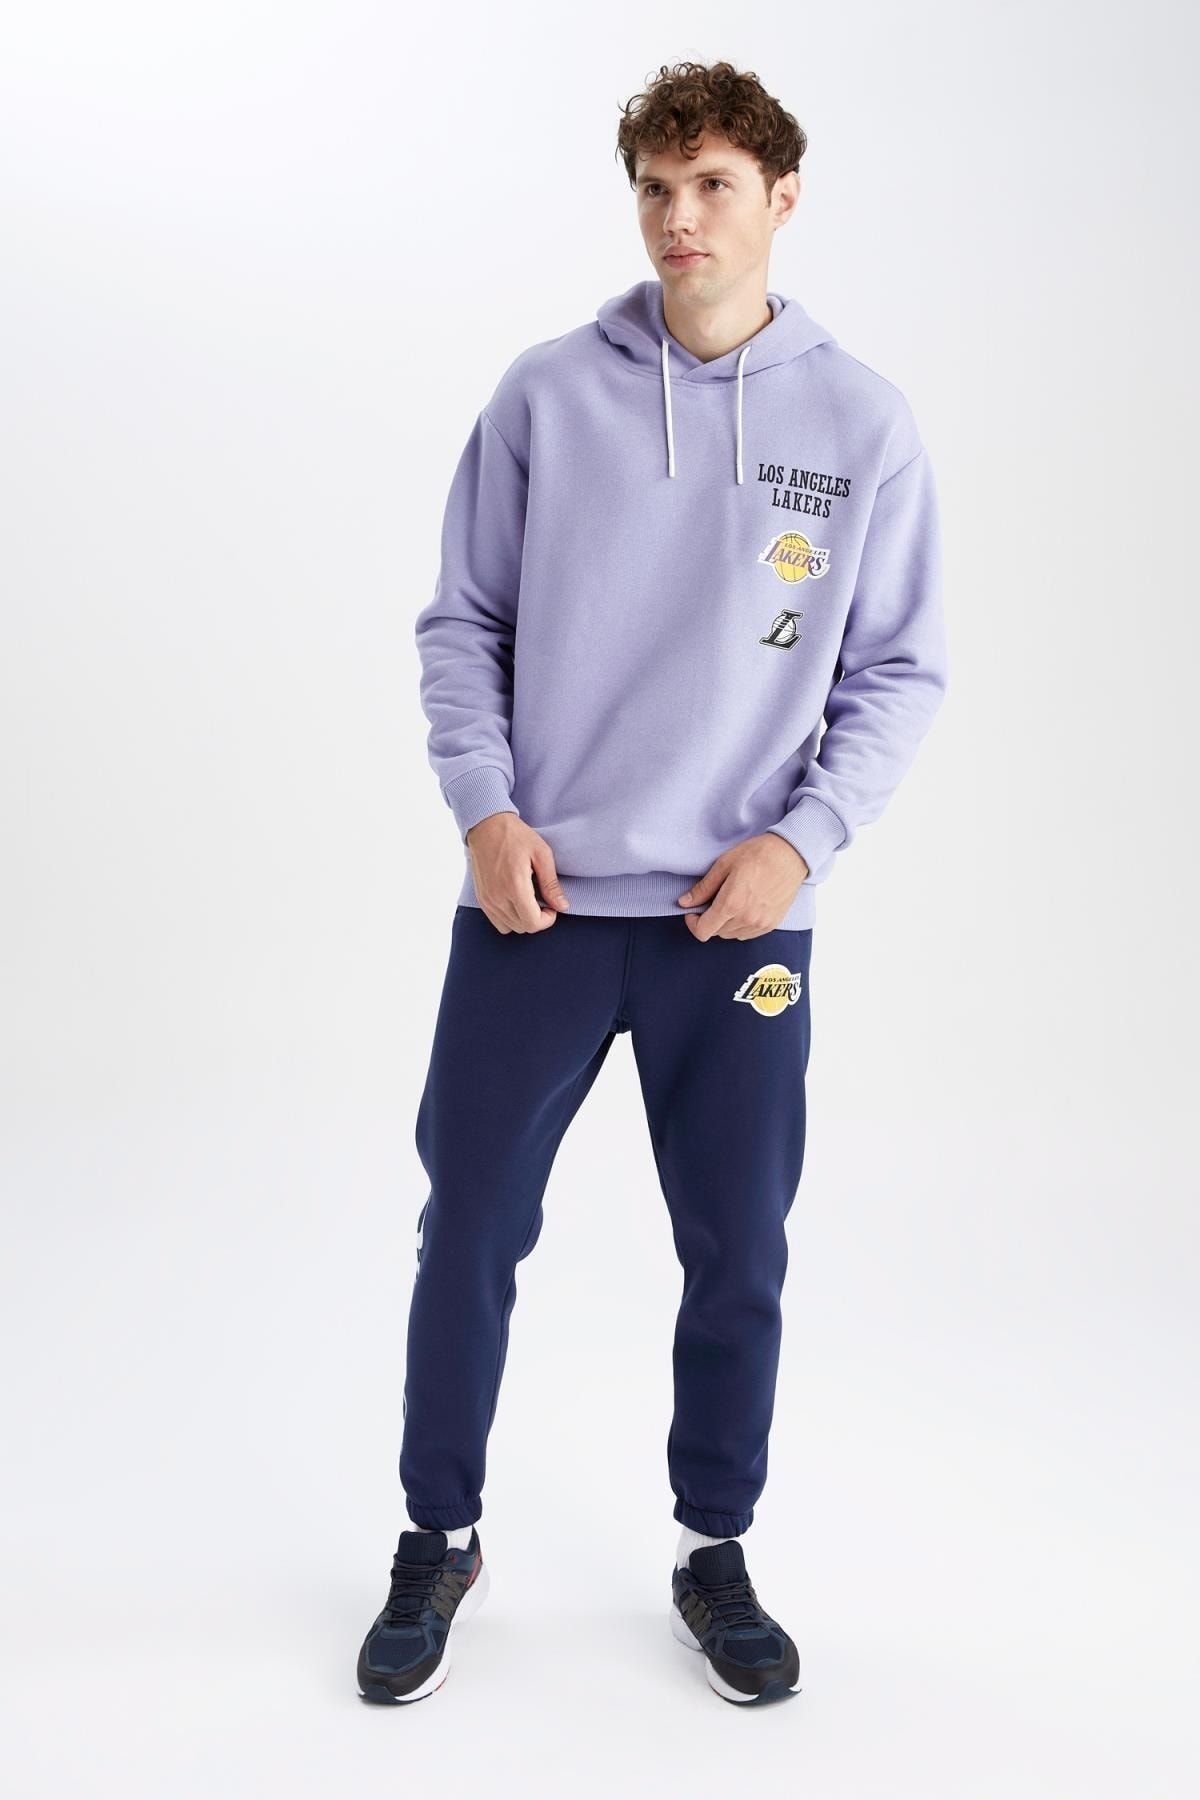 Los Angeles Lakers Sweatshirt Türkiye Fiyat ve Modelleri